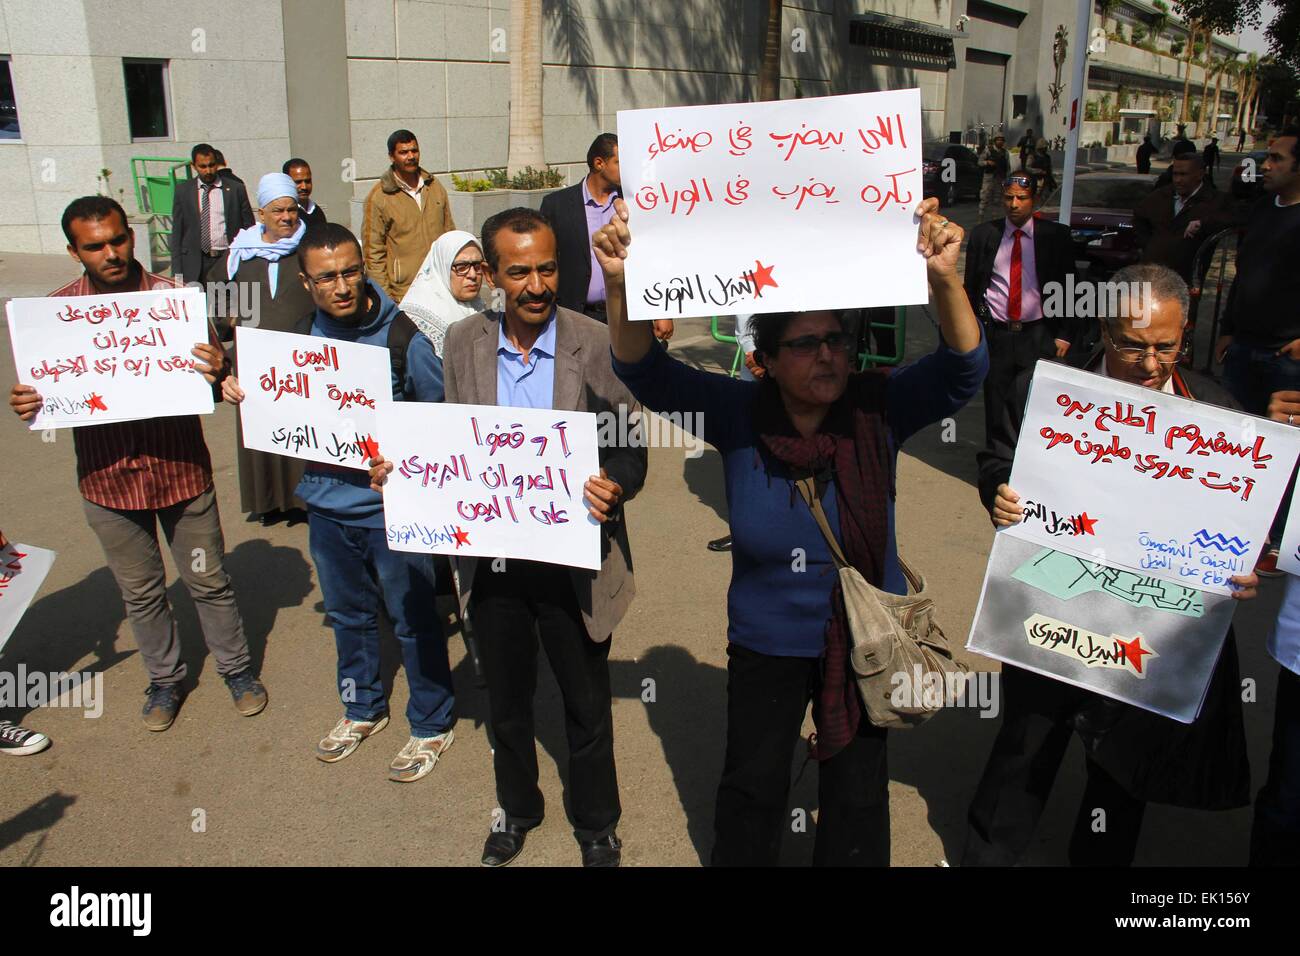 (150404)--Kairo, 4. April 2015 (Xinhua)--Demonstranten versammeln sich vor der Botschaft von Saudi-Arabien, Saudi Arabien-geführten Luftangriffe auf Jemen in Kairo, die Hauptstadt von Ägypten, 4. April 2015 zu protestieren. Rund zwei Dutzend jemenitischen und ägyptischen Aktivisten hielten Banner und riefen Slogans hier am Samstag, Saudi Arabien-geführte Koalition kontinuierliche Luftangriffe auf Jemen zu protestieren. (Xinhua/Ahmed Gomaa) Stockfoto